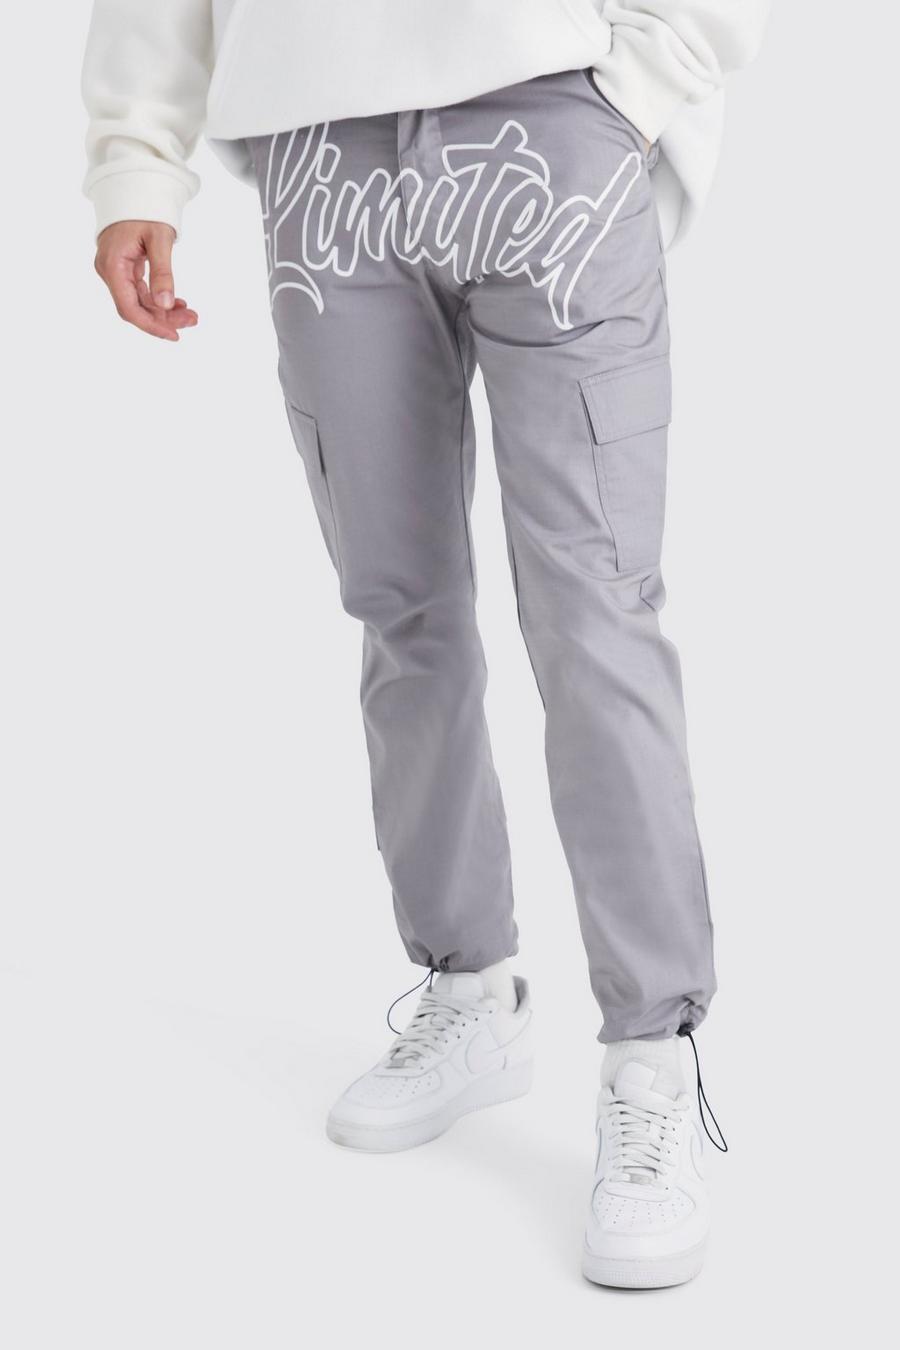 Pantalón cargo ajustado Limited con costuras antidesgarros y texto, Charcoal gris